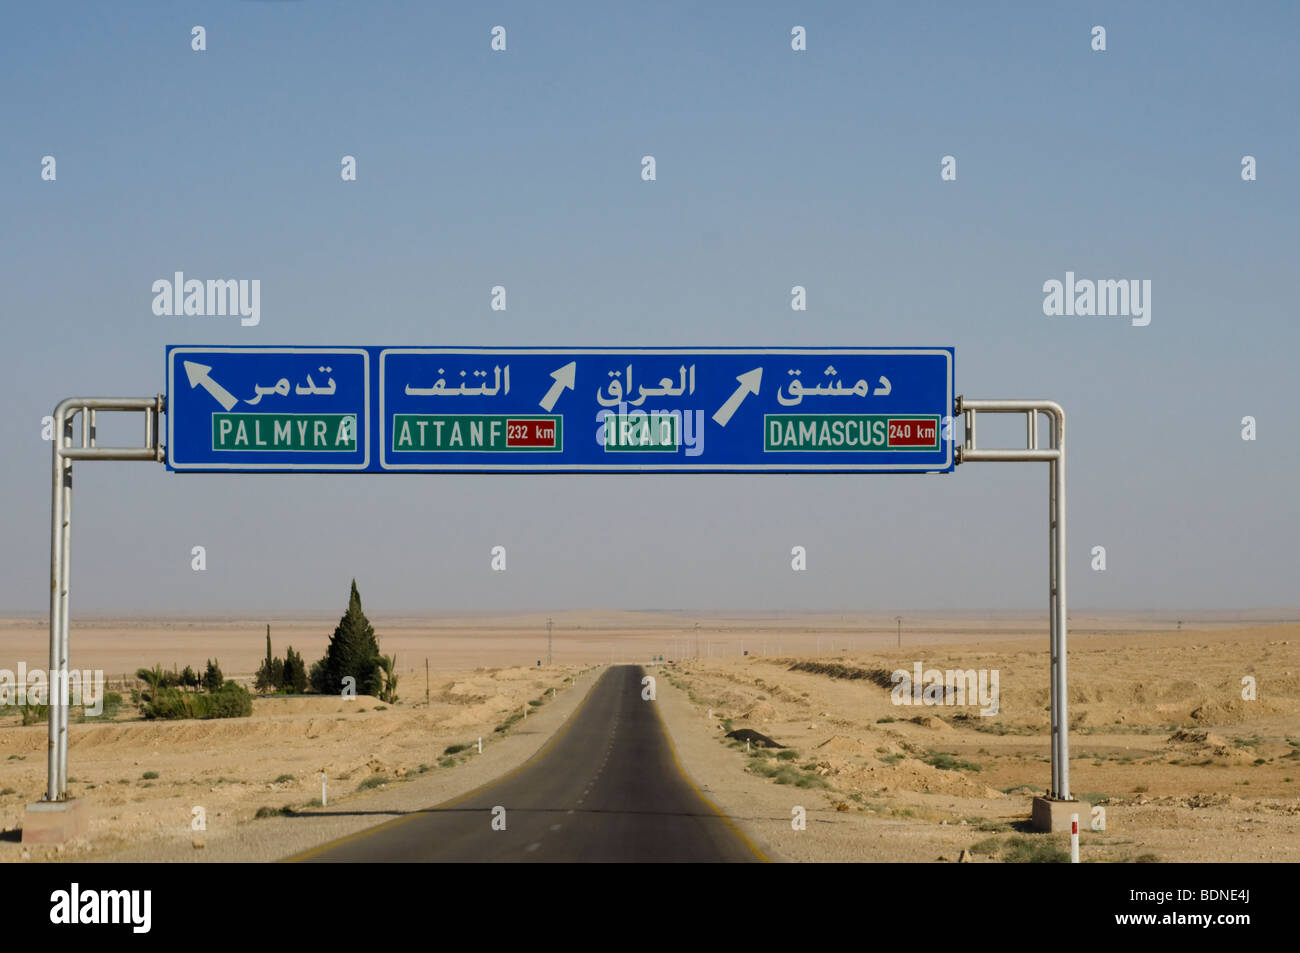 La signalisation routière le long d'une autoroute syrien montrent la voie à l'Iraq et la capitale syrienne de Damas. Banque D'Images